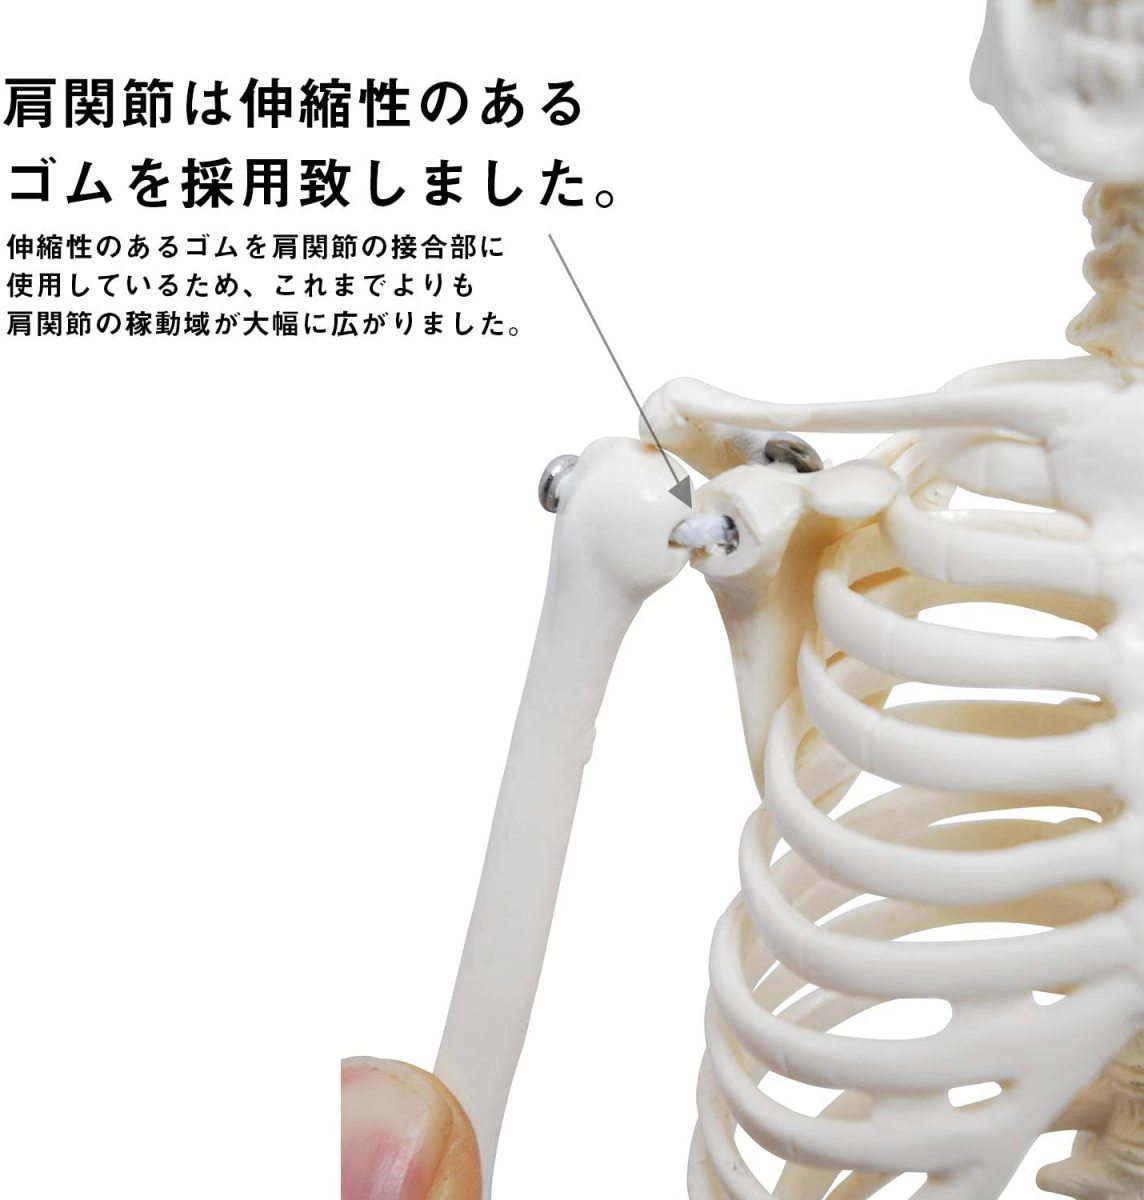 人体模型 人体骨格模型 骨格標本 45cm 1/4 モデル ホワイト 台座 可動域 直立 スタンド 教材 フィギュア LB-229_画像3